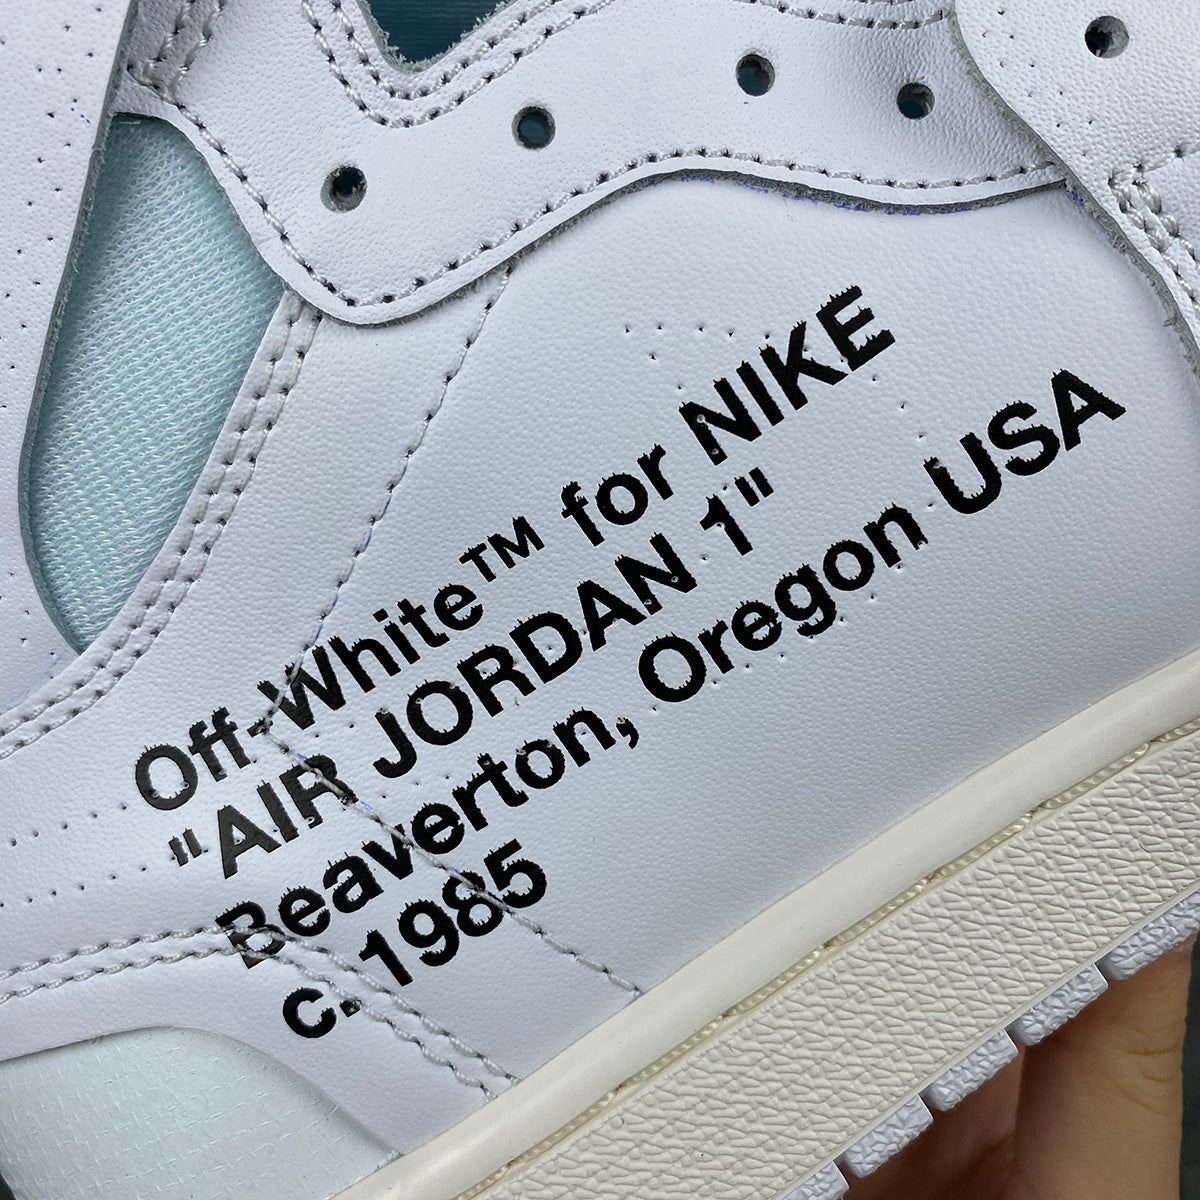 Off-White x Air Jordan 1 Retro High OG 'White' 2018